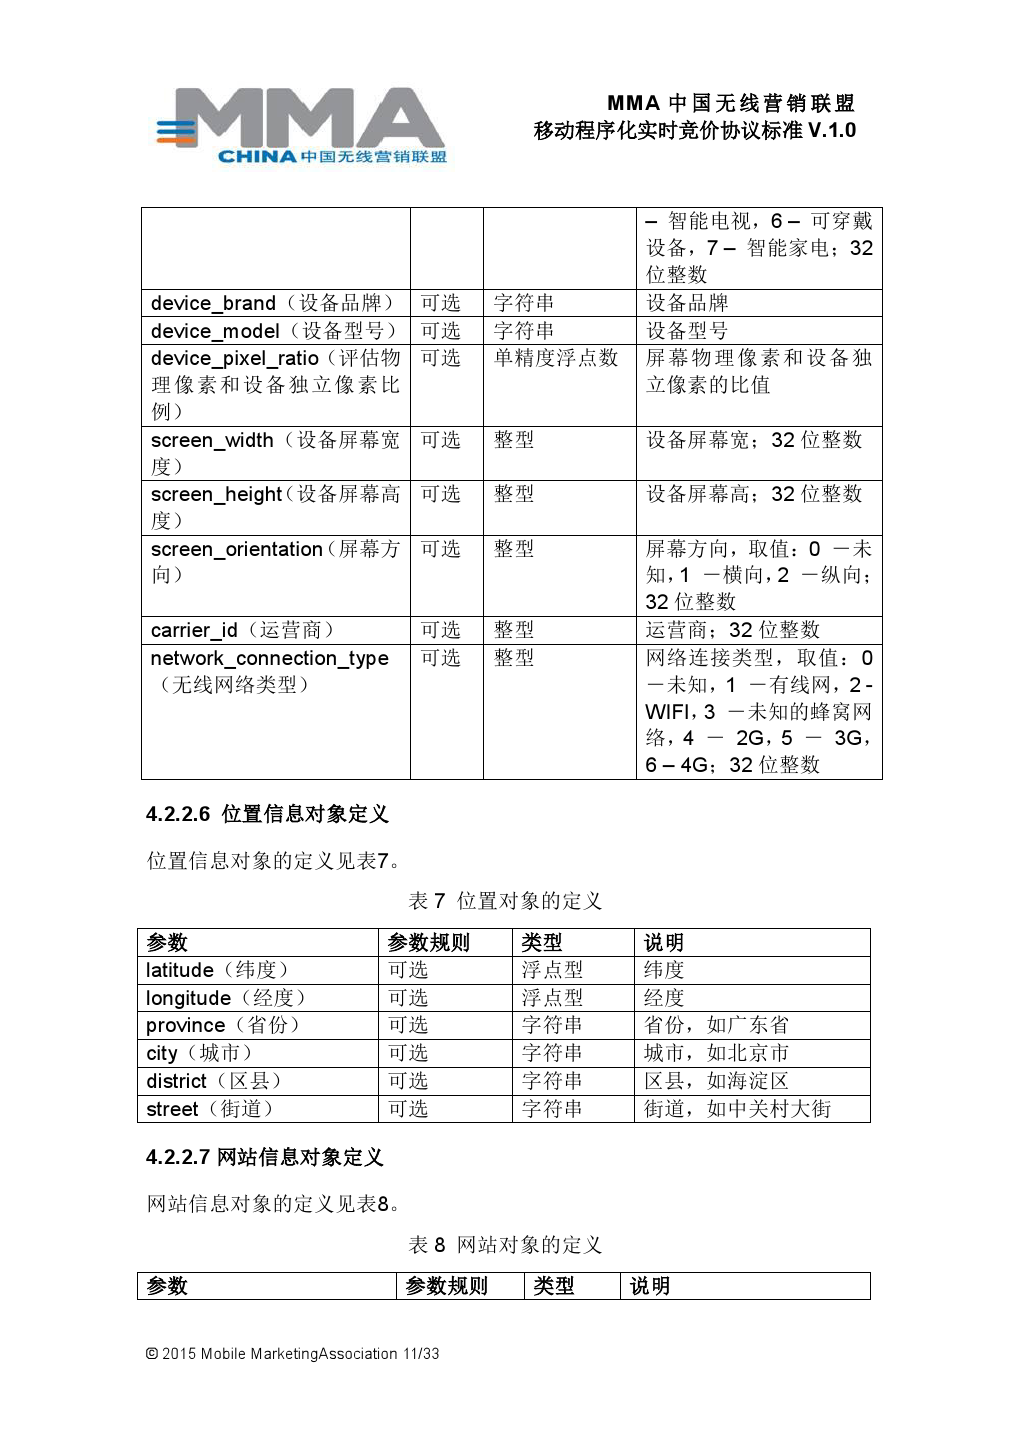 MMA中国无线营销联盟移动程序化实时竞价协议标准V.1.0_000012